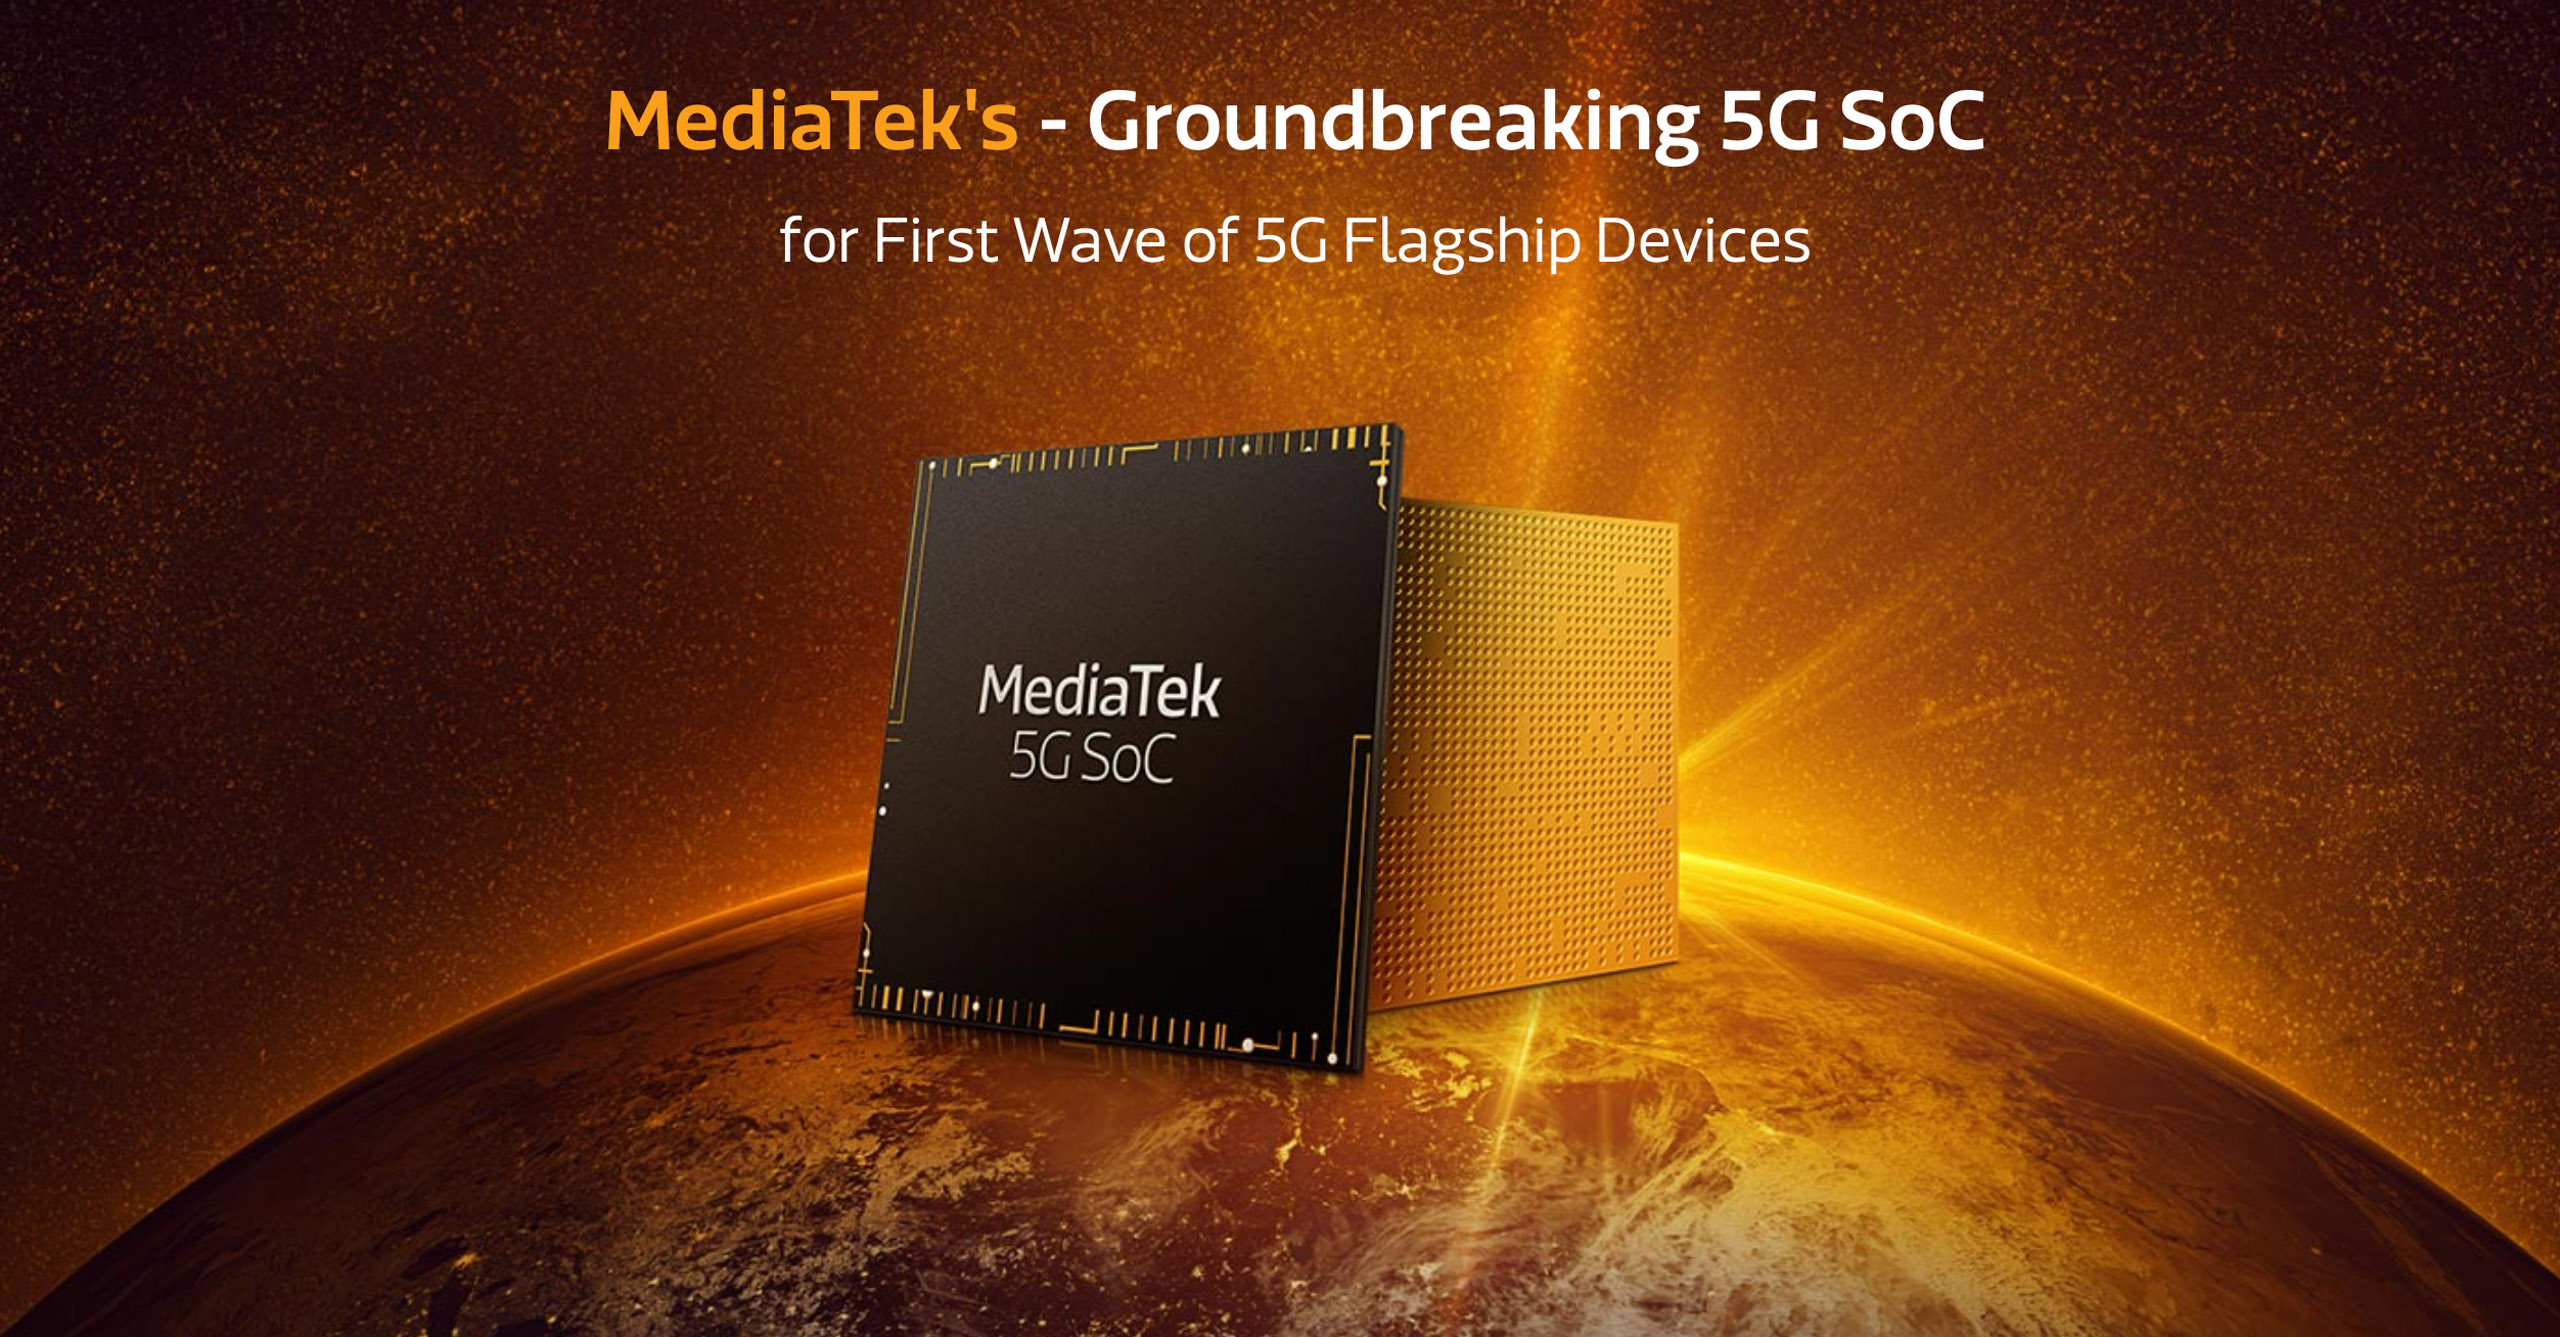 MediaTek công bố bộ vi xử lý 5G tiên phong đột phá cho các thiết bị cao cấp